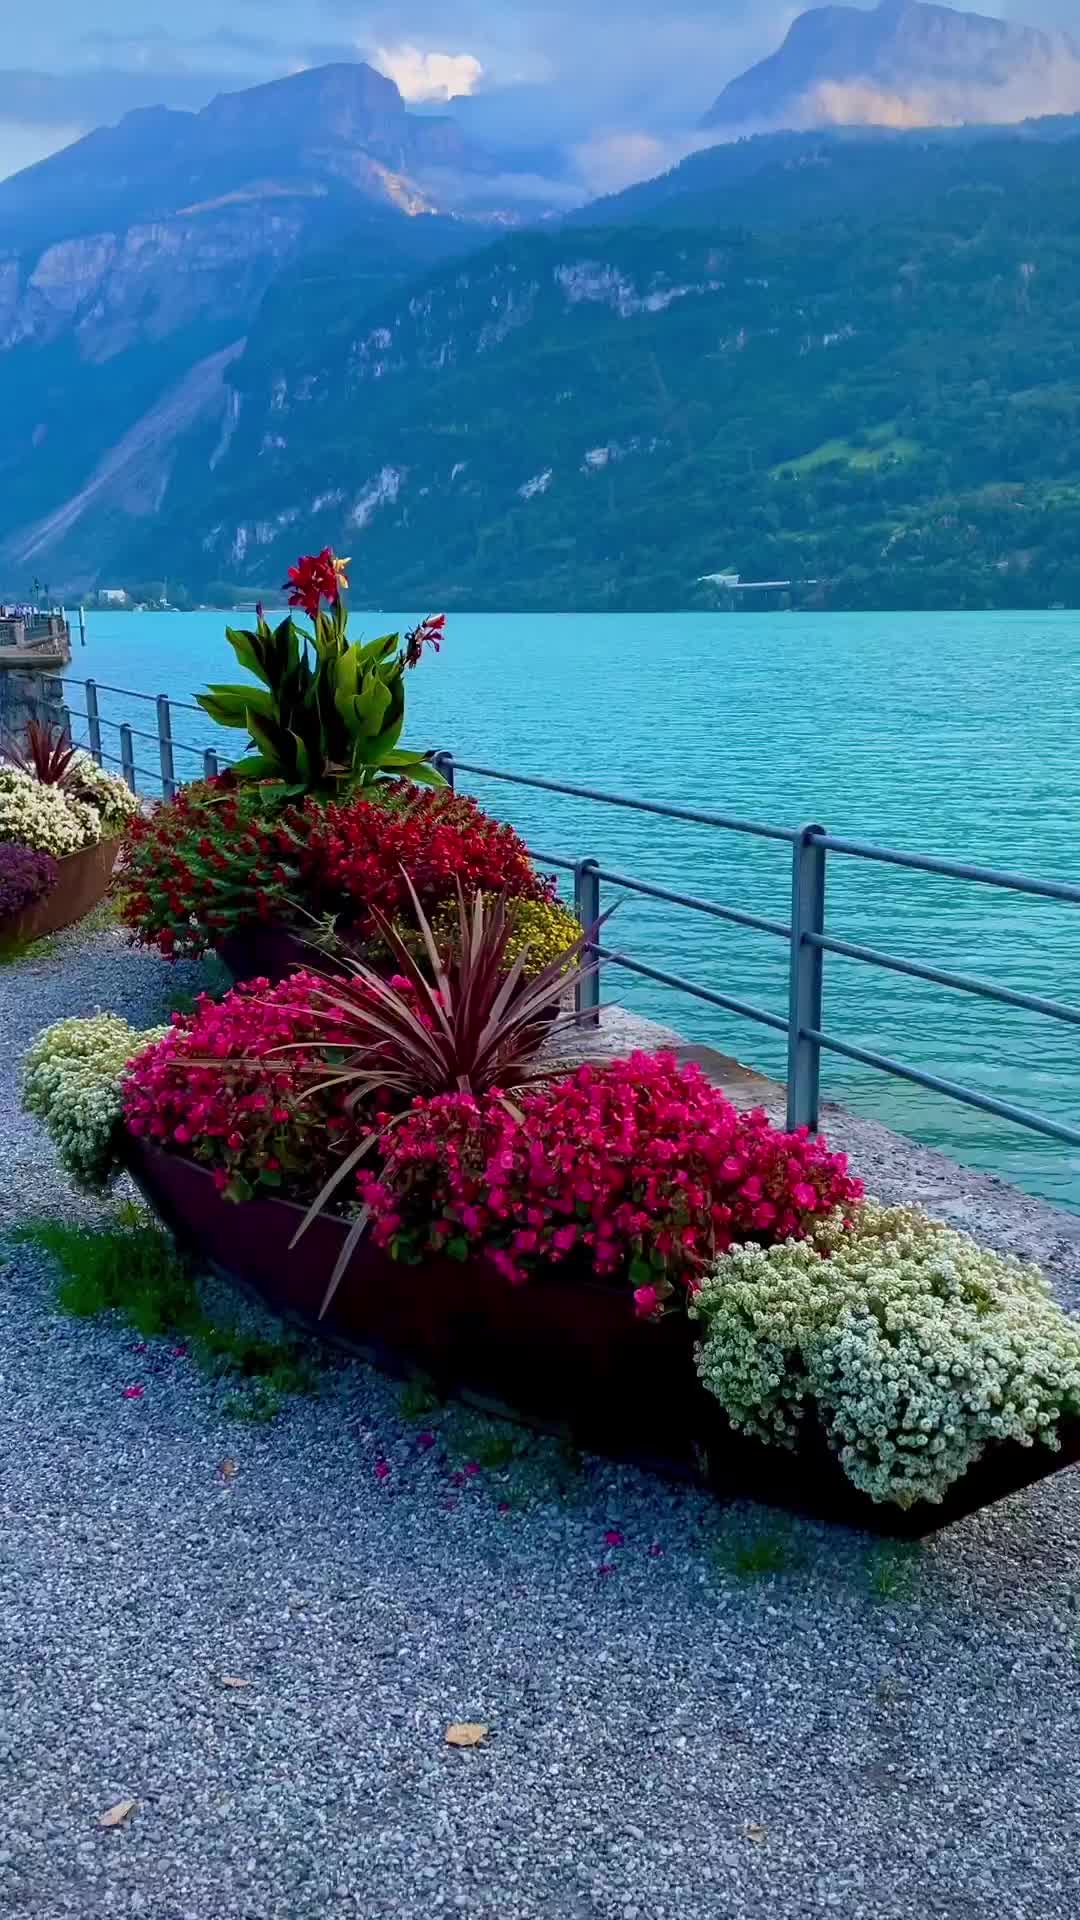 Evening Walk by Brienz Lake in Switzerland